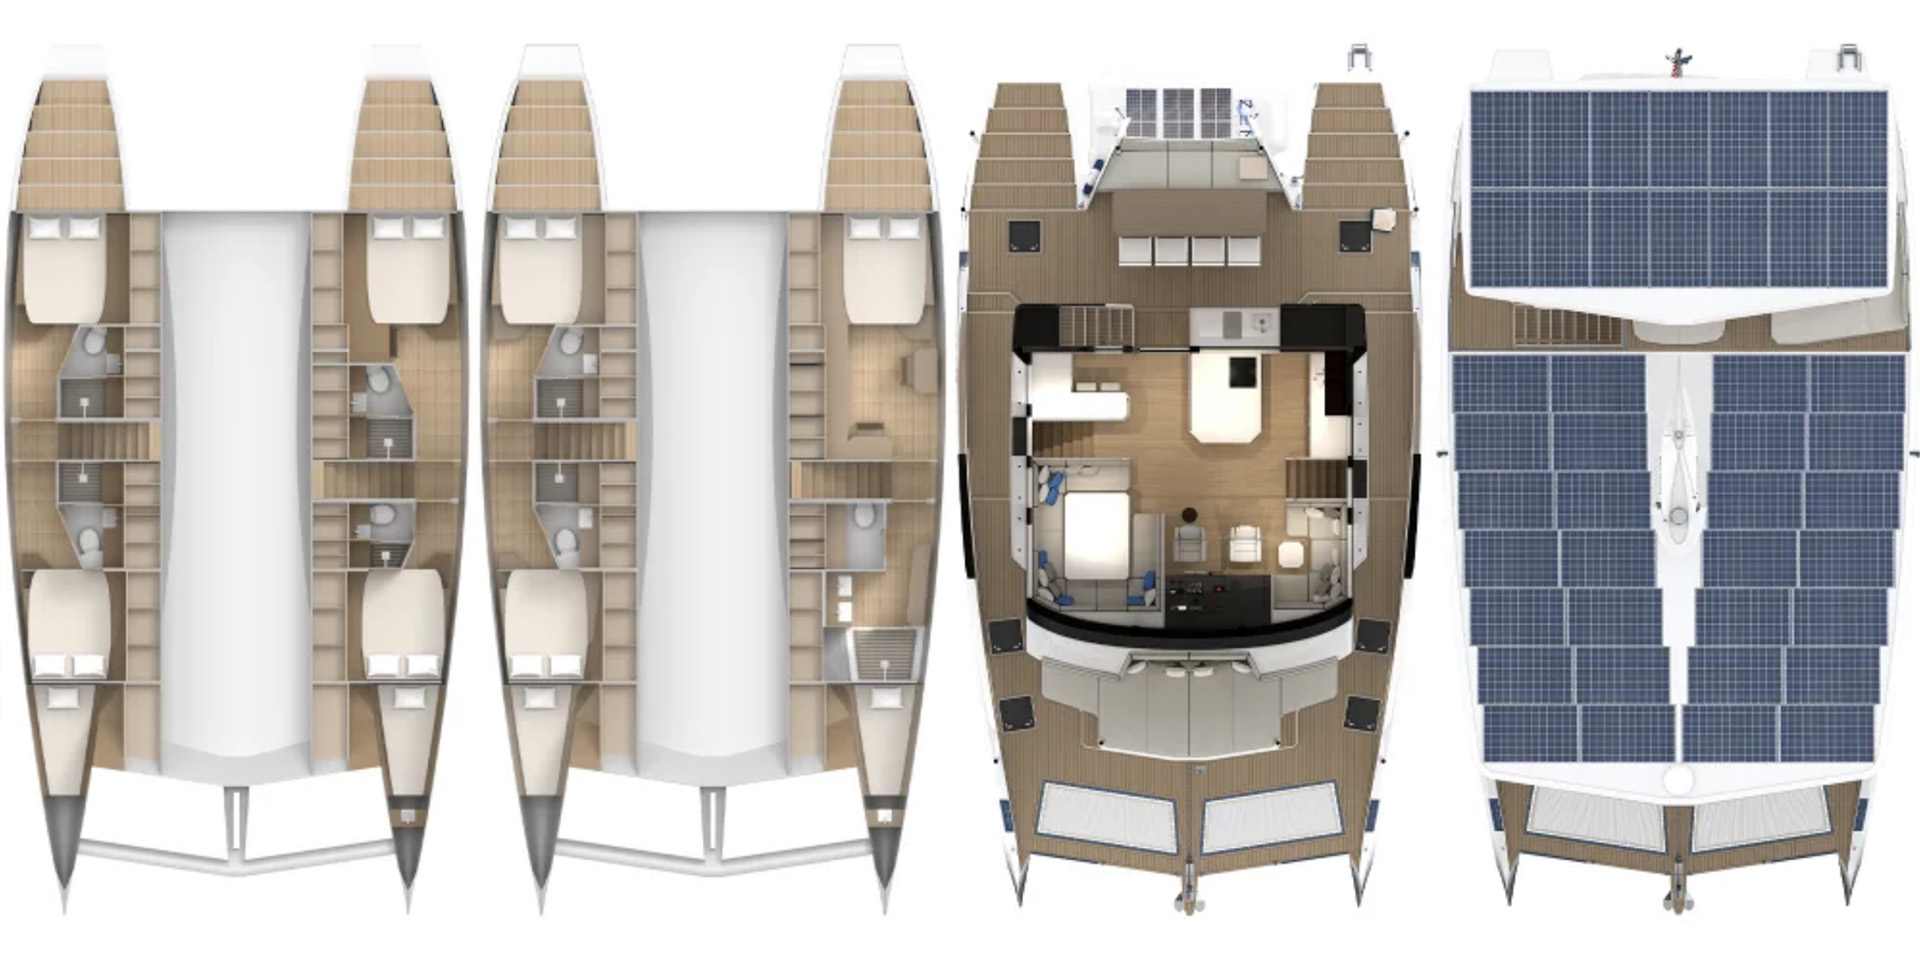 Un plano esquemático del ZEN50 en cada uno de sus cuatro pisos